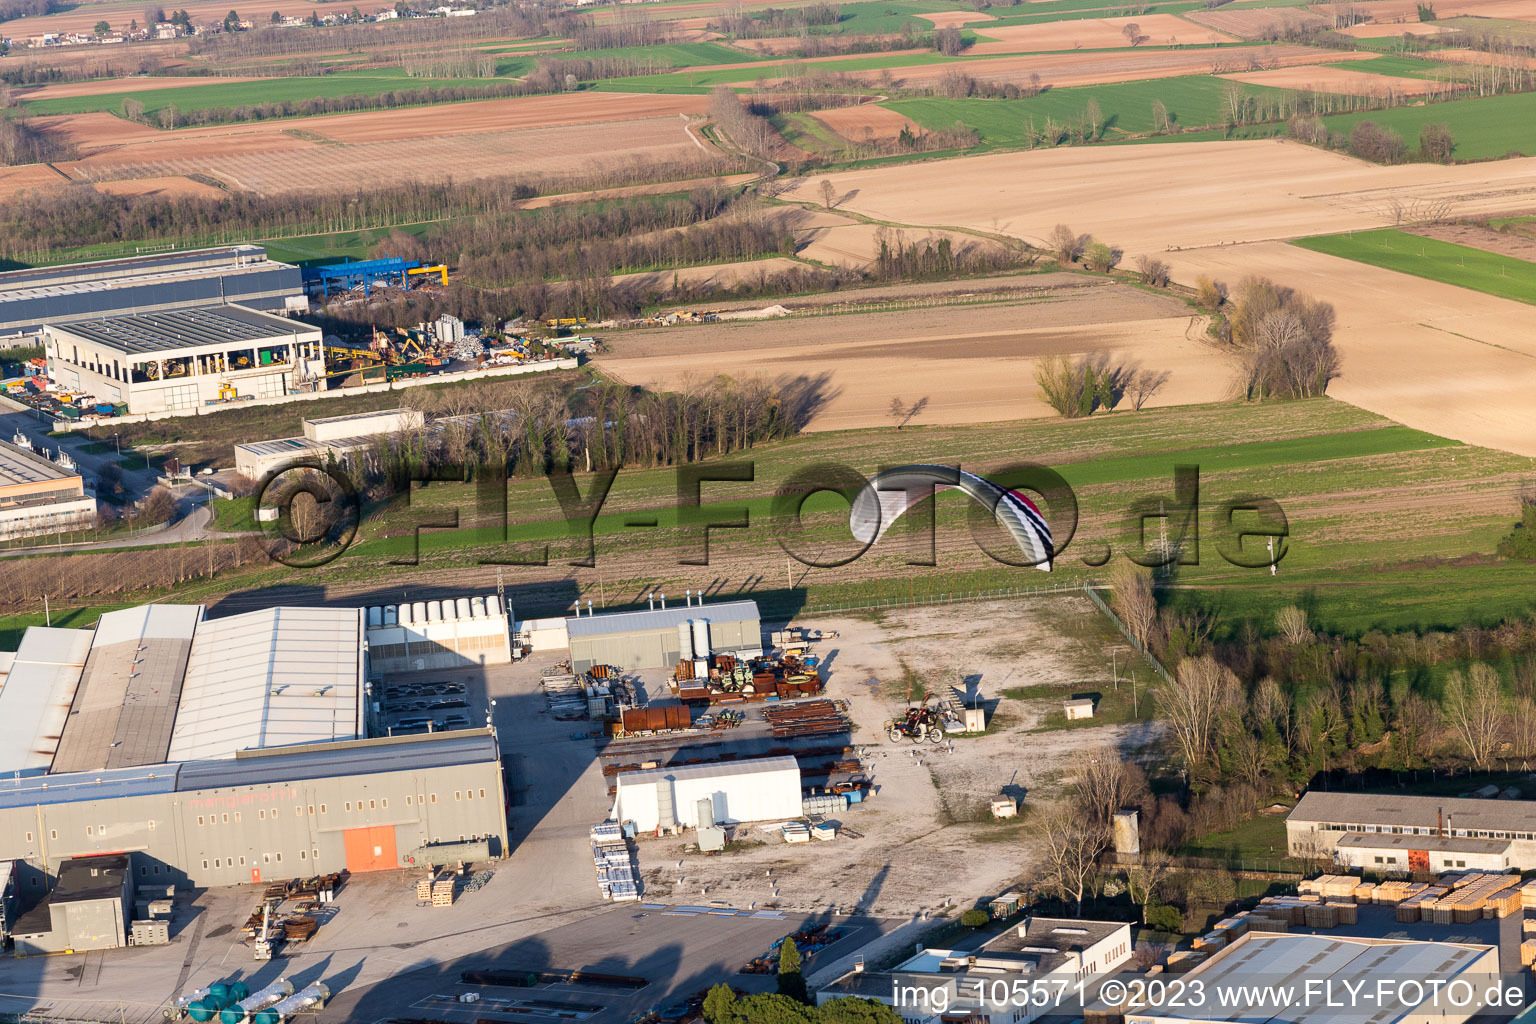 Panellia di Sedegliano, Al Casale Flugplatz im Bundesland Friaul-Julisch Venetien, Italien aus der Luft